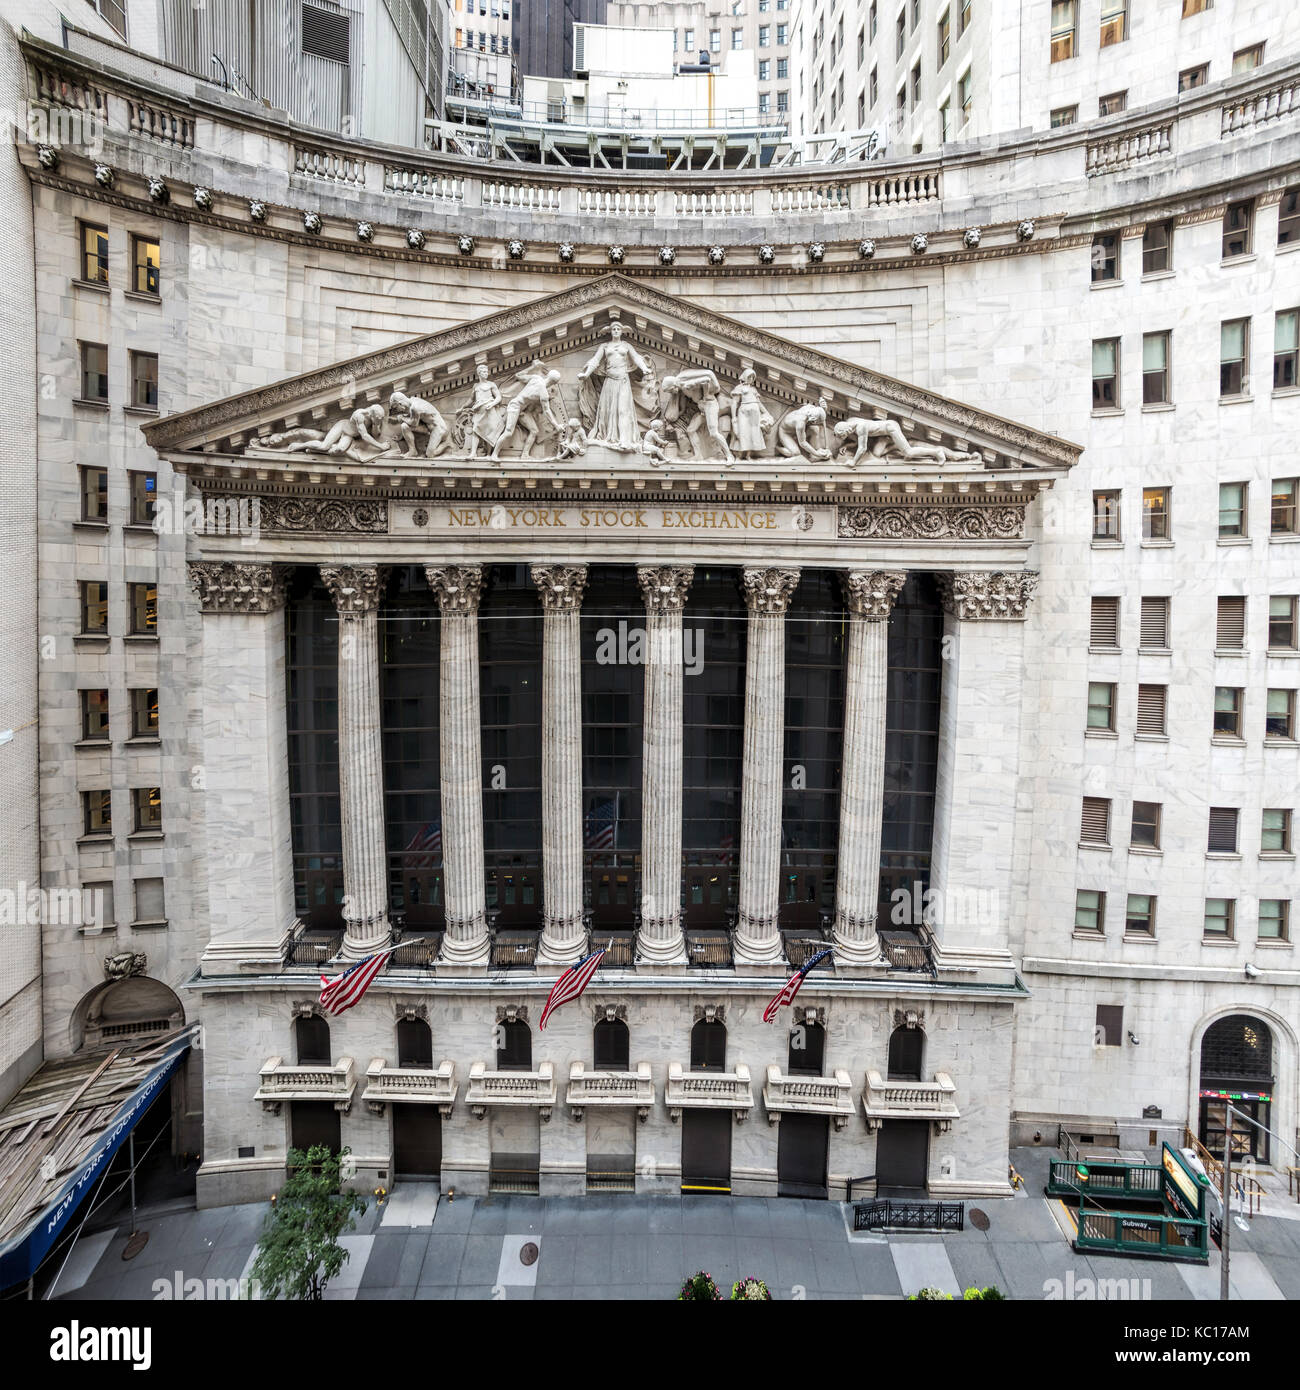 La façade en pierre calcaire de la célèbre new york stock exchange sur Wall Street. sculpté par John Quincy Adams ward en 1904. Banque D'Images